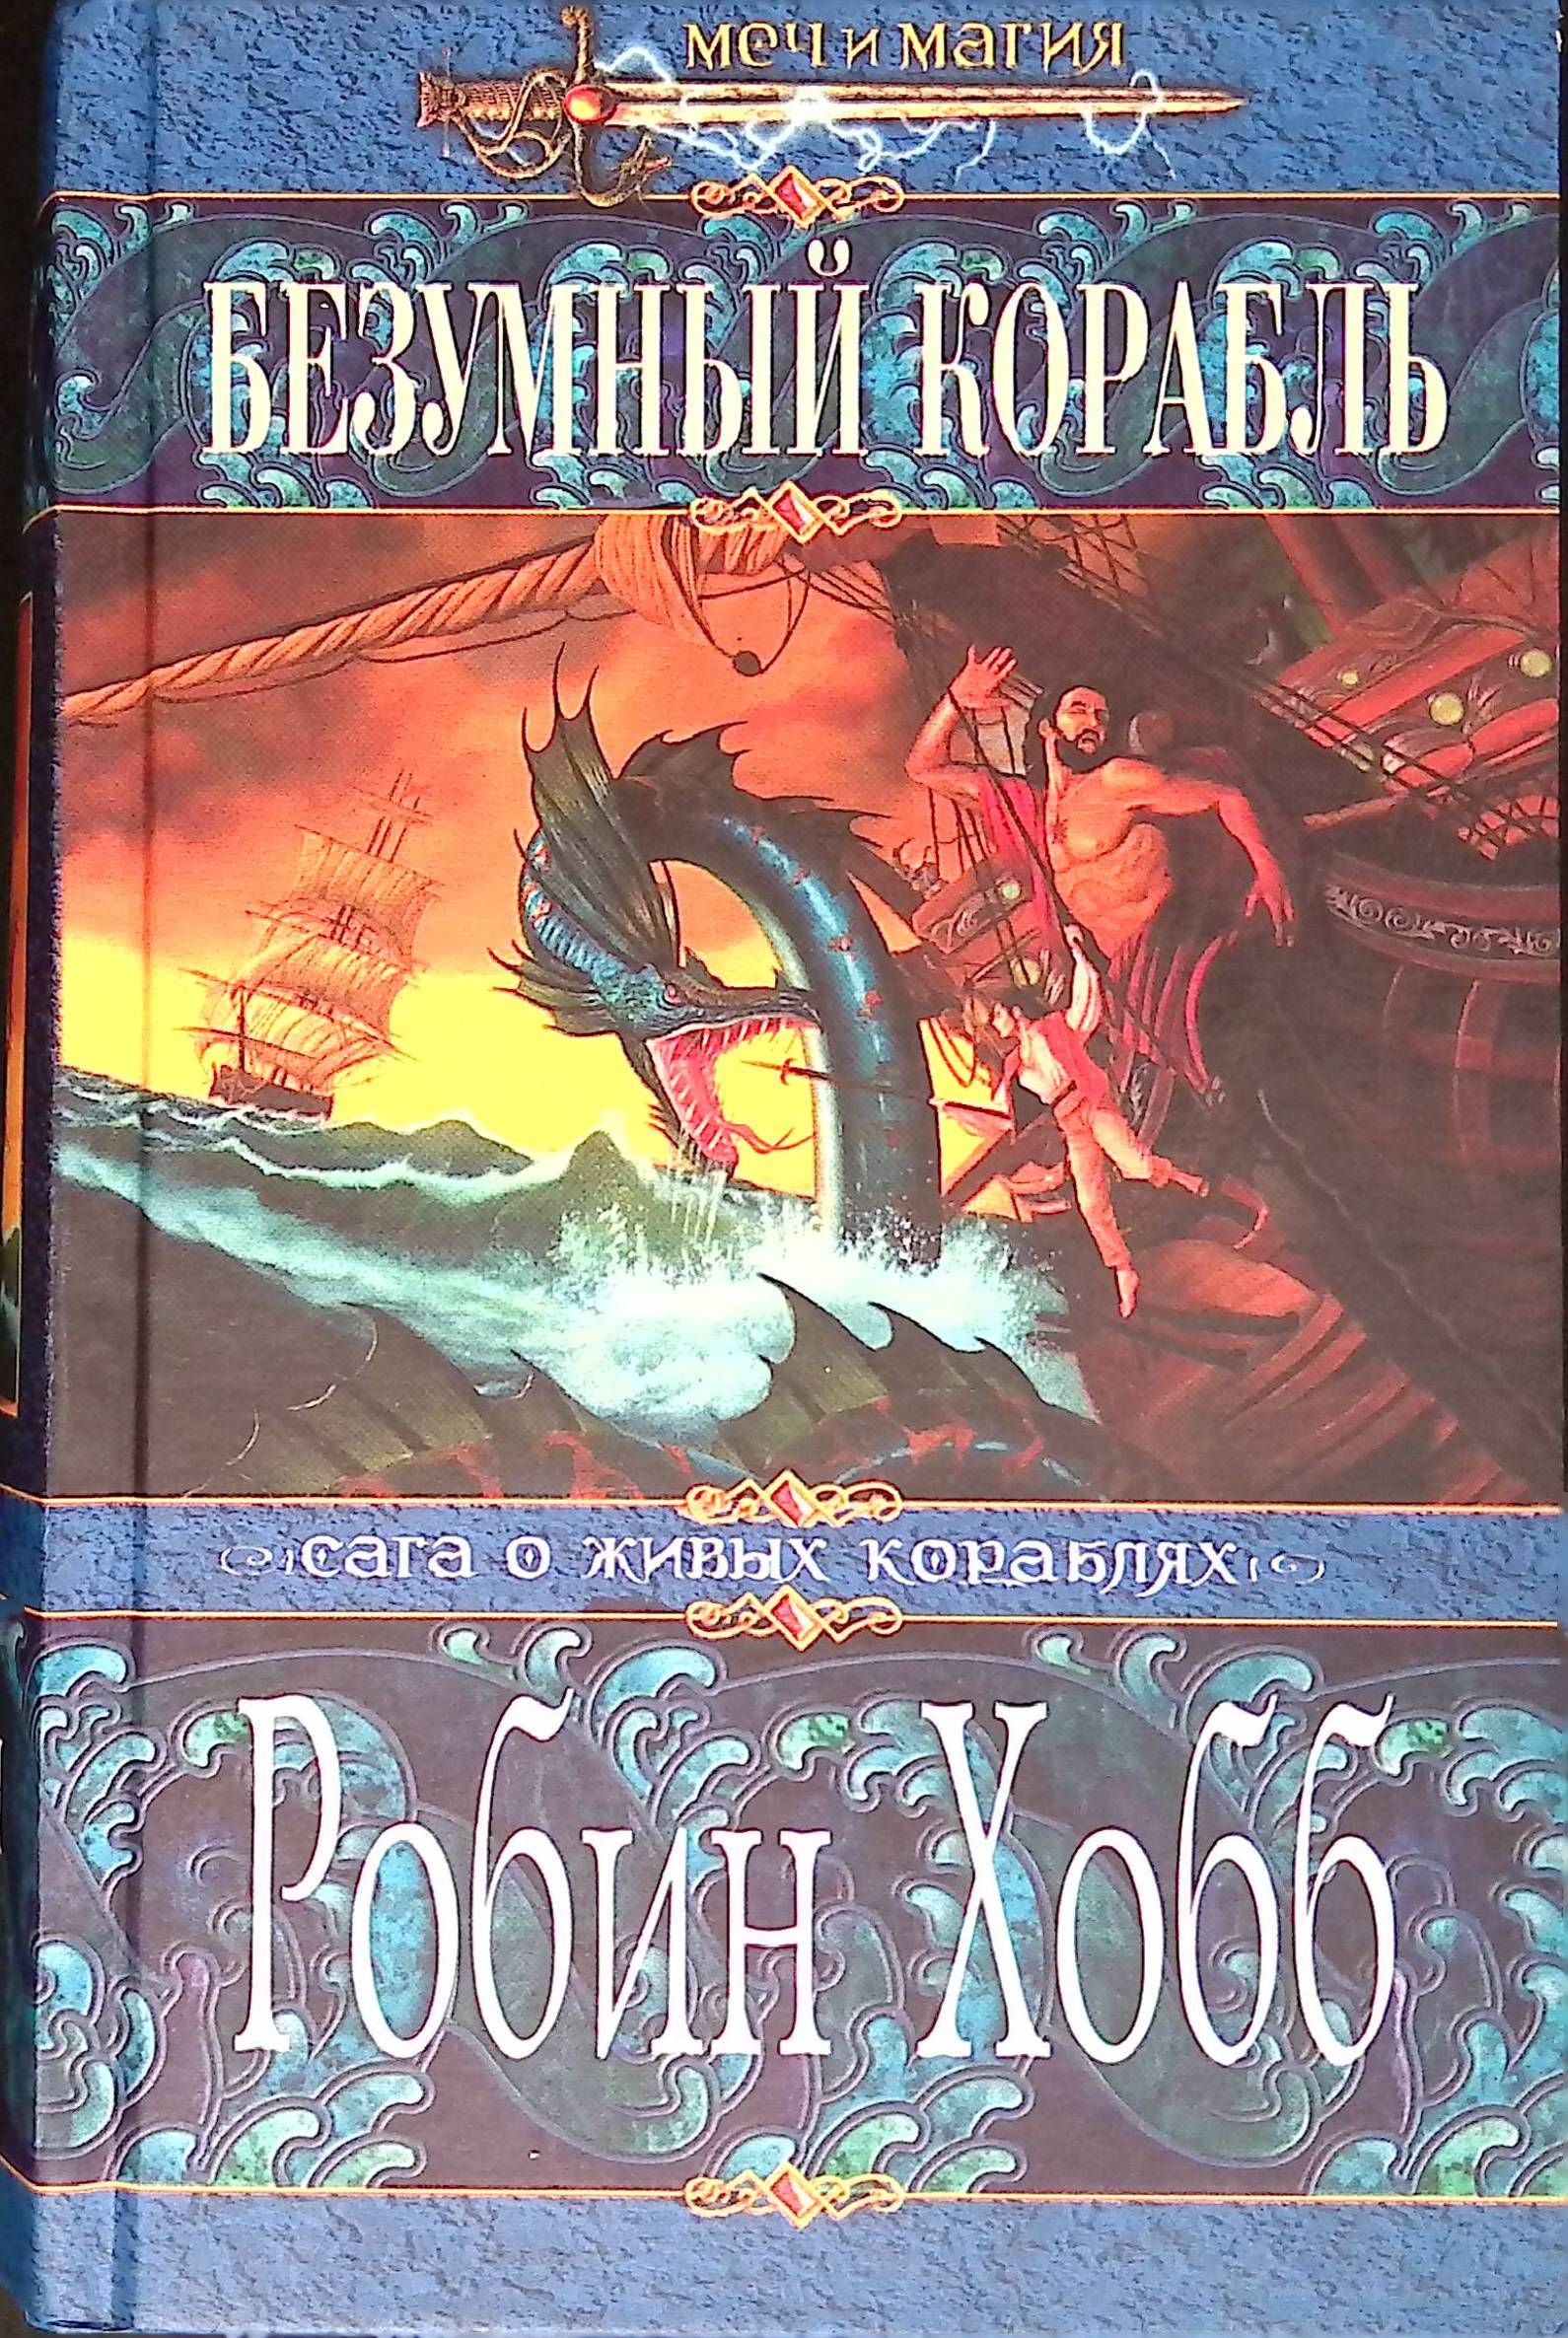 Безумный корабль. Волшебный корабль Робин хобб книга. Безумный корабль Робин хобб обложка книги. Безумный корабль Робин хобб книга. Сага о живых кораблях (Робин хобб) Безумный корабль.